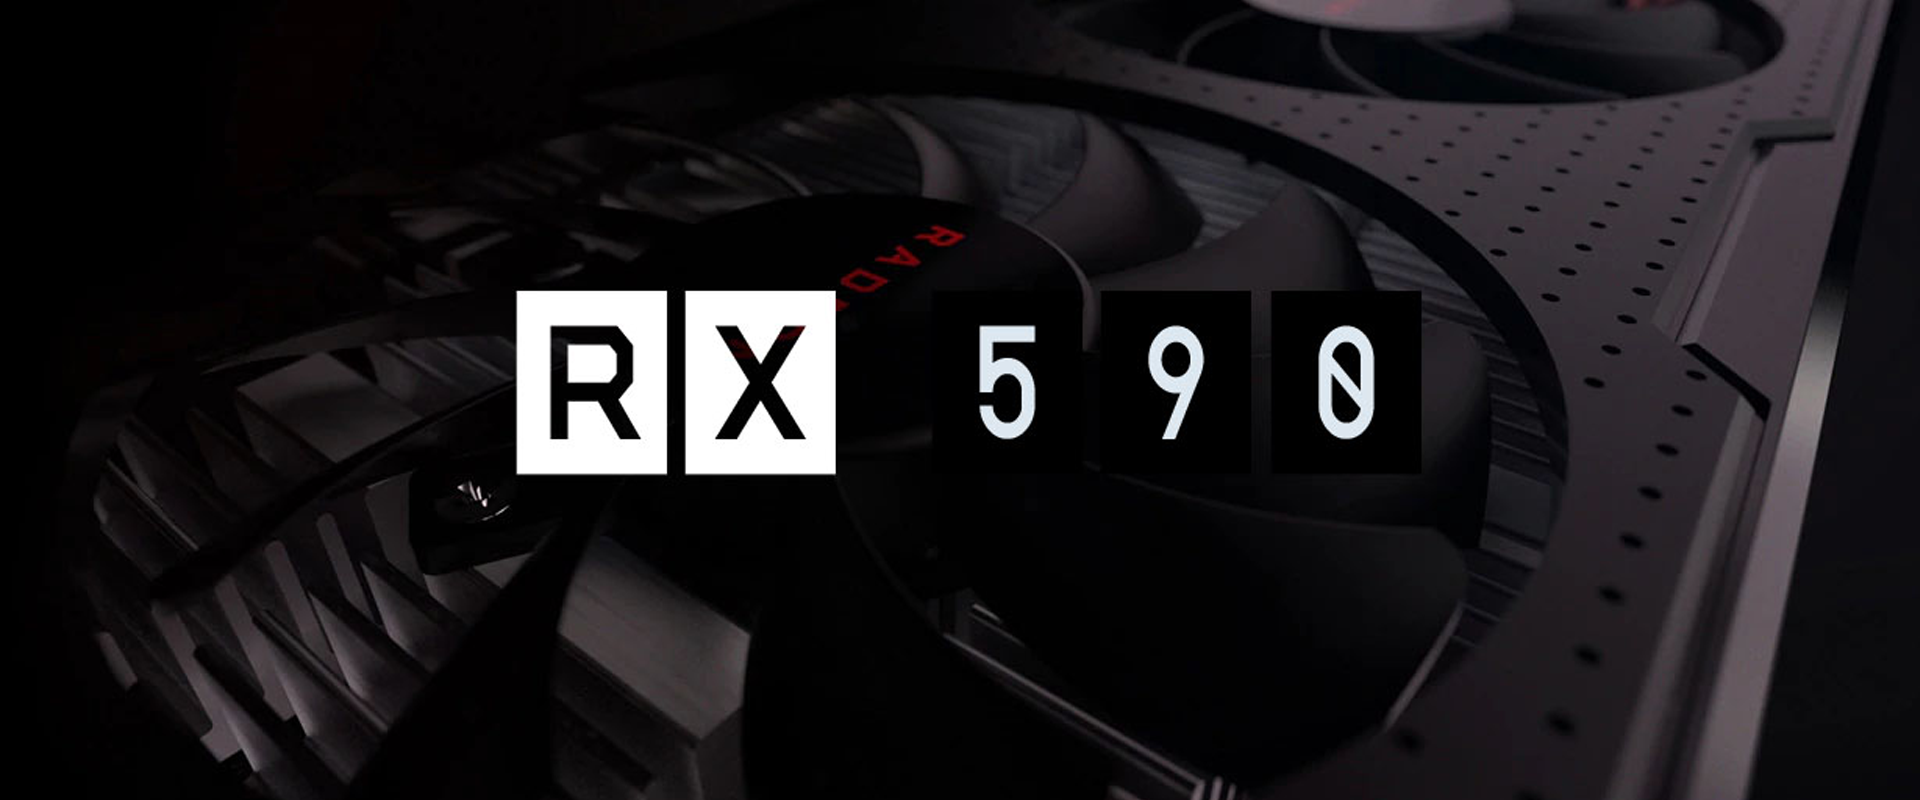 Itt vannak az első képek az AMD RX 590-es videokártyájáról